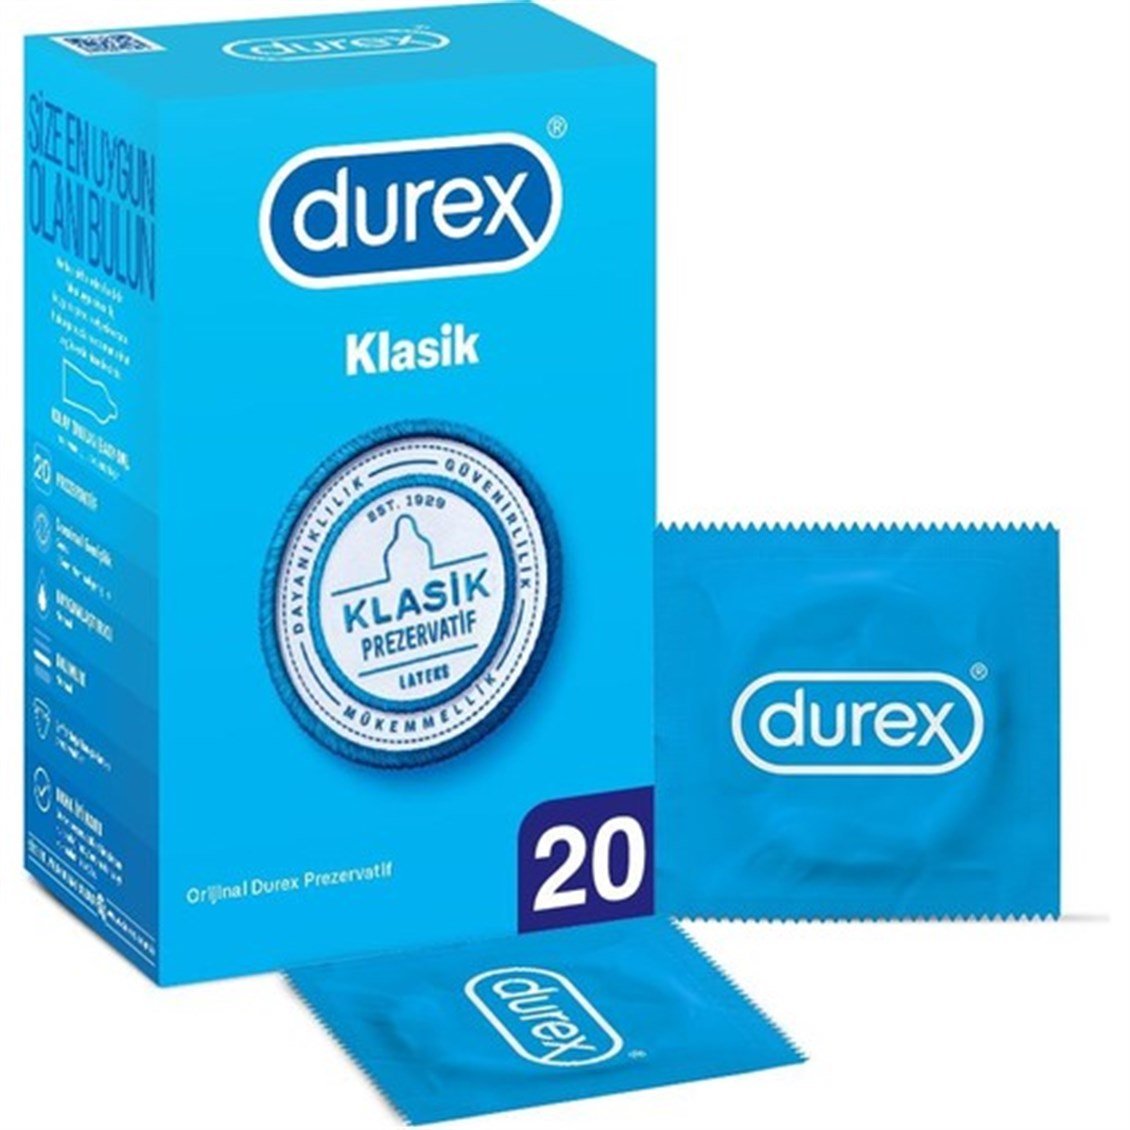 Durex Klasik Prezervatif 20'li - Onur Market